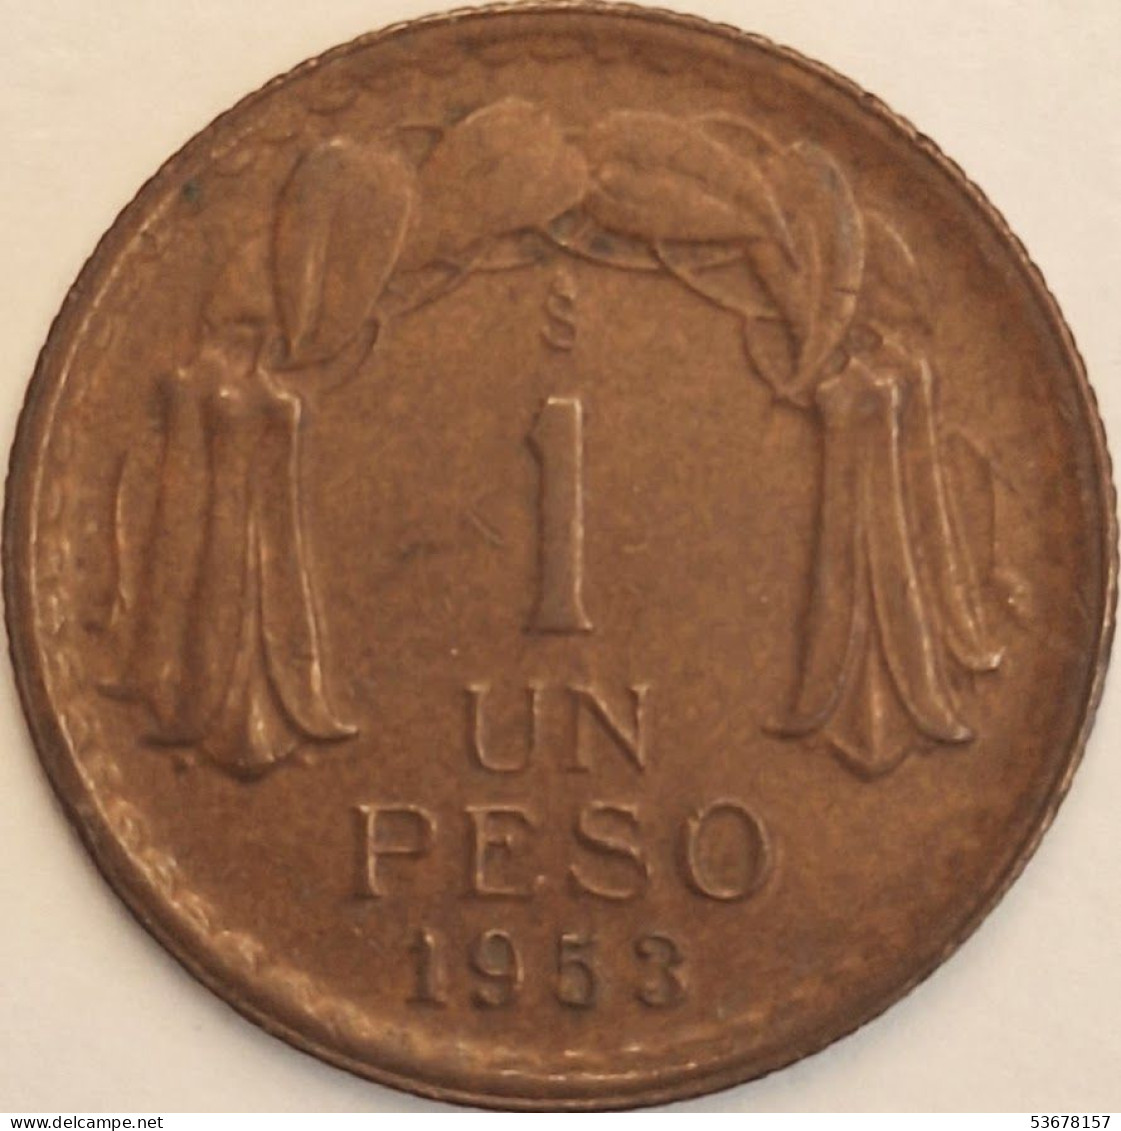 Chile - Peso 1953, KM# 179 (#3423) - Chile